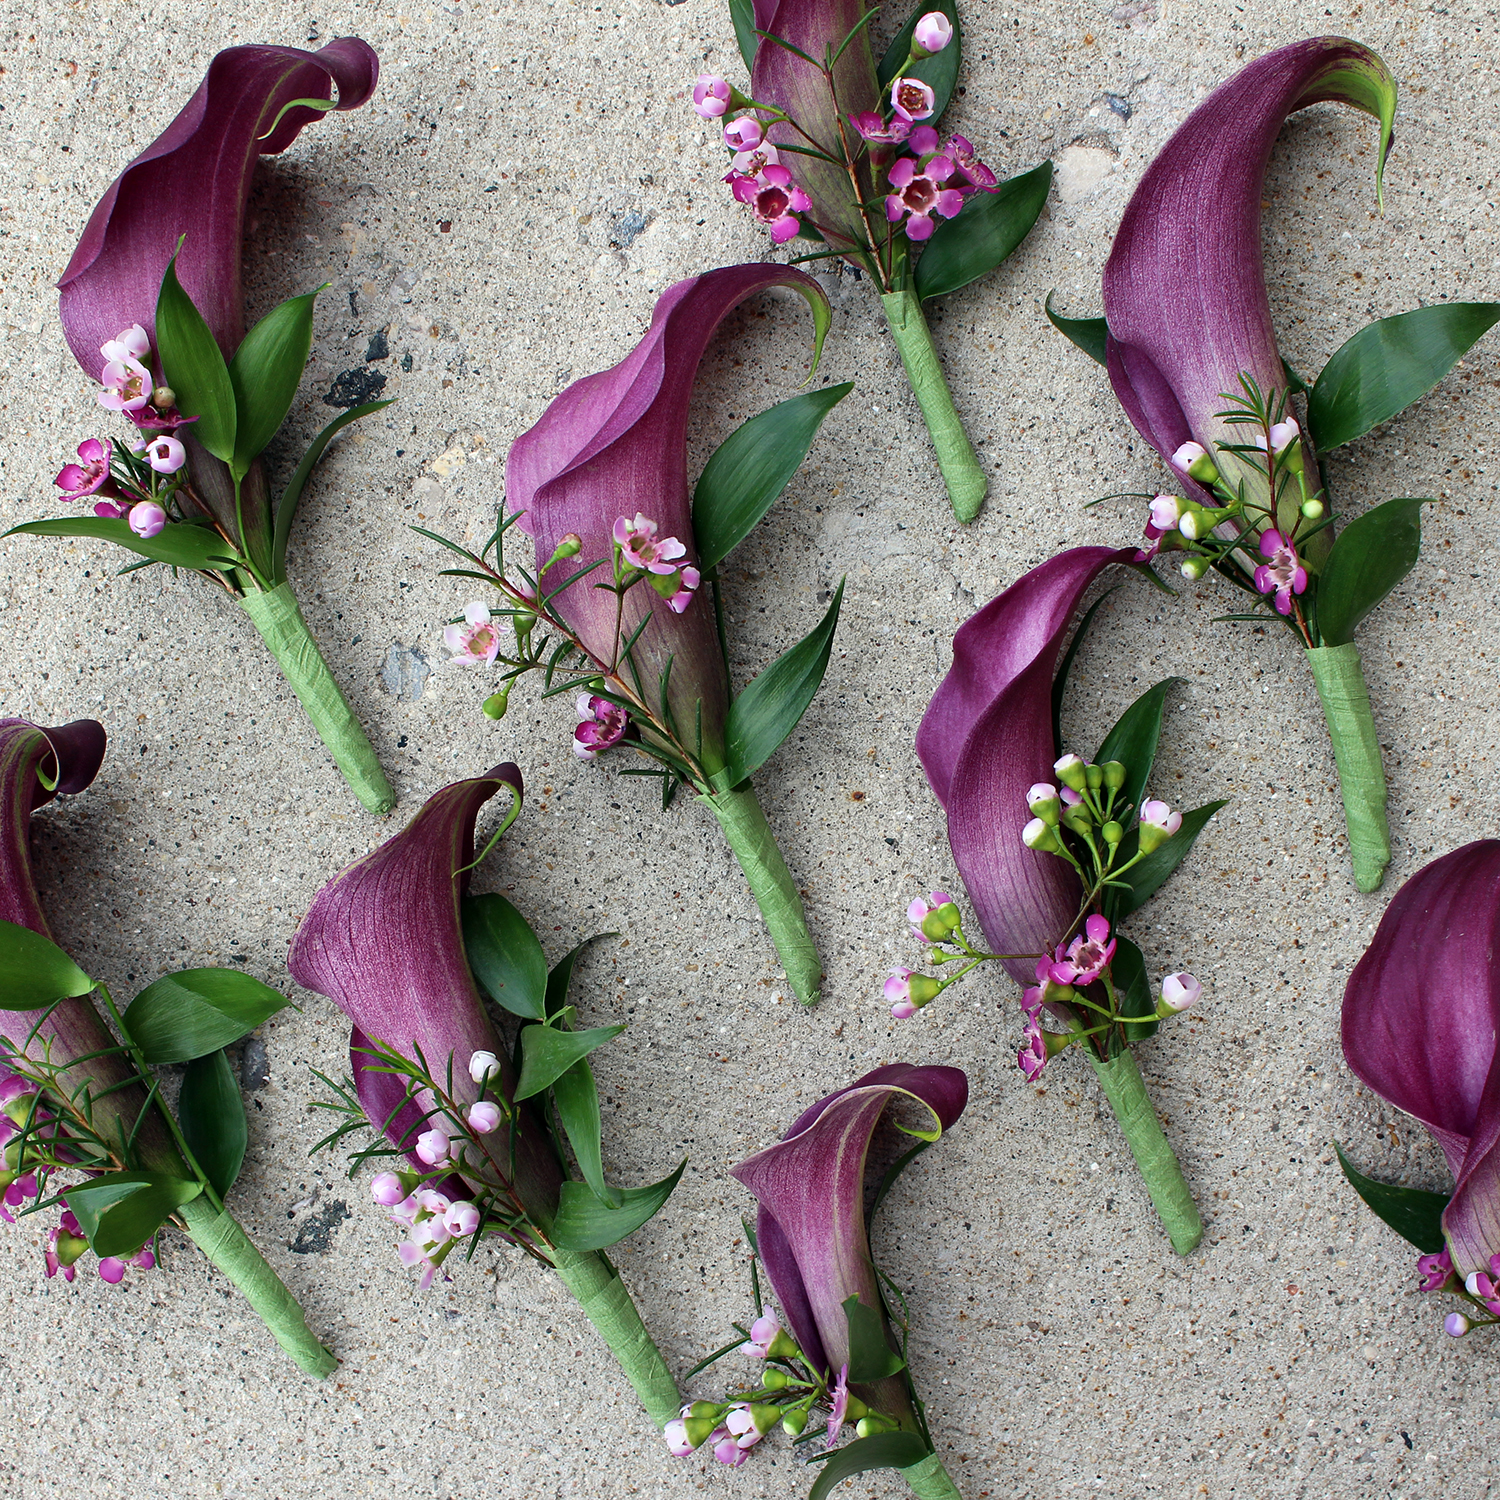 purple and white calla lily boutonniere